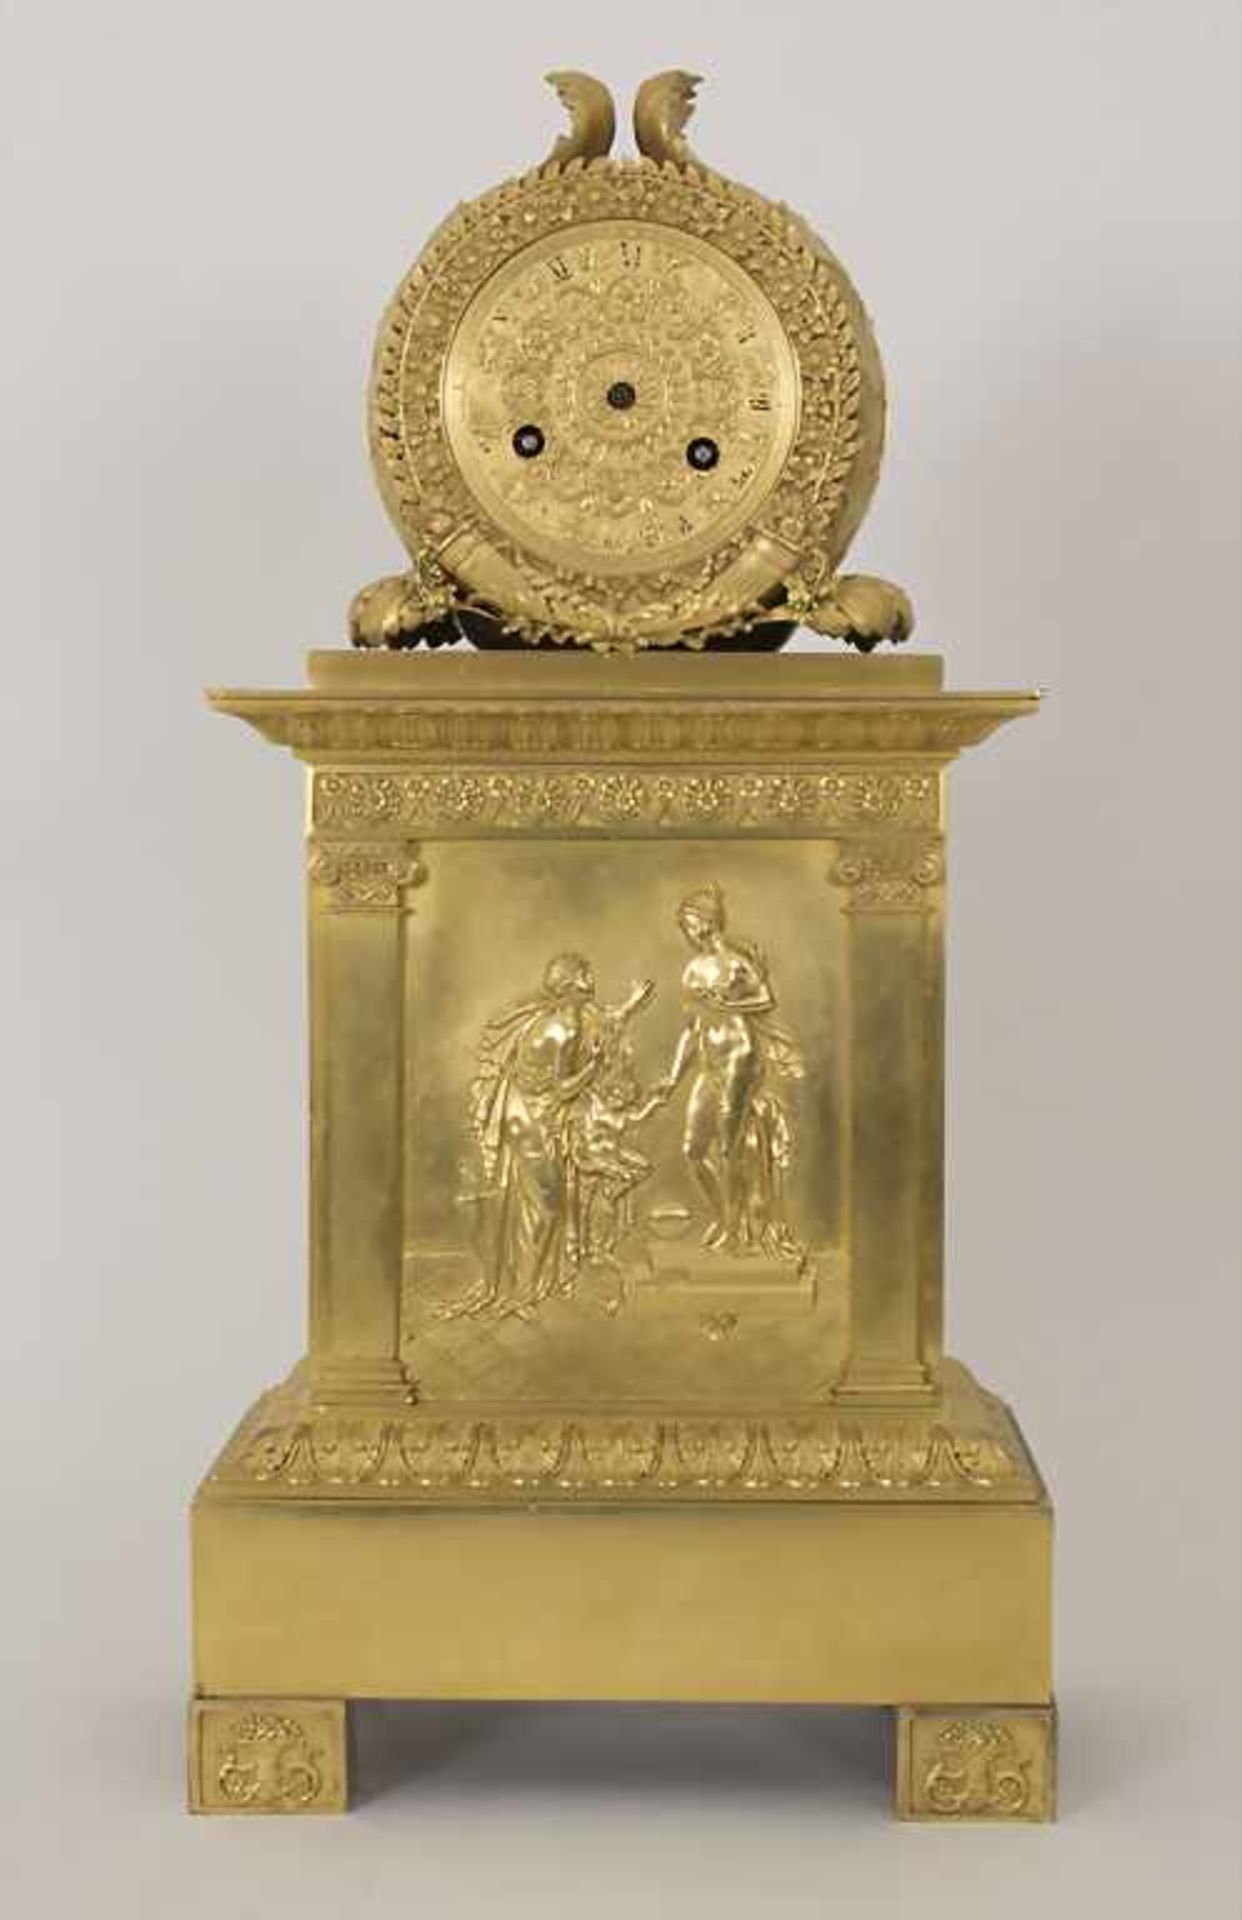 Empire Pendule 'Die Künste' / An Empire clock 'The fine arts', Paris, um 1800 - Bild 3 aus 11